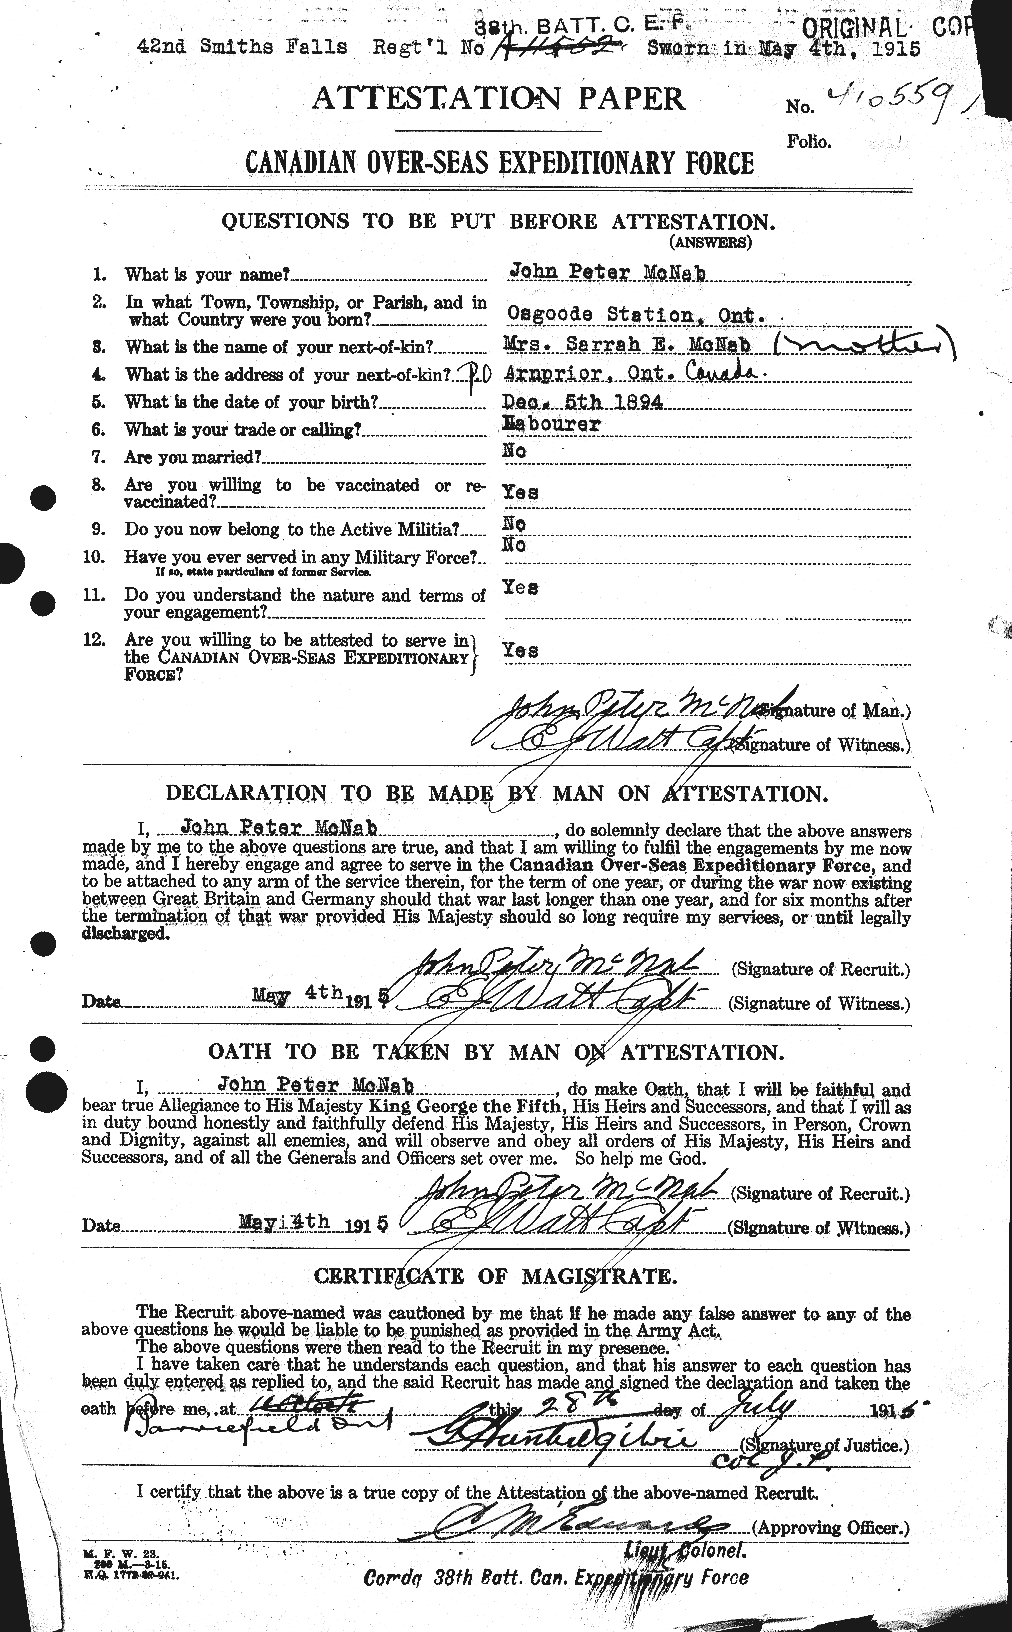 Dossiers du Personnel de la Première Guerre mondiale - CEC 539574a